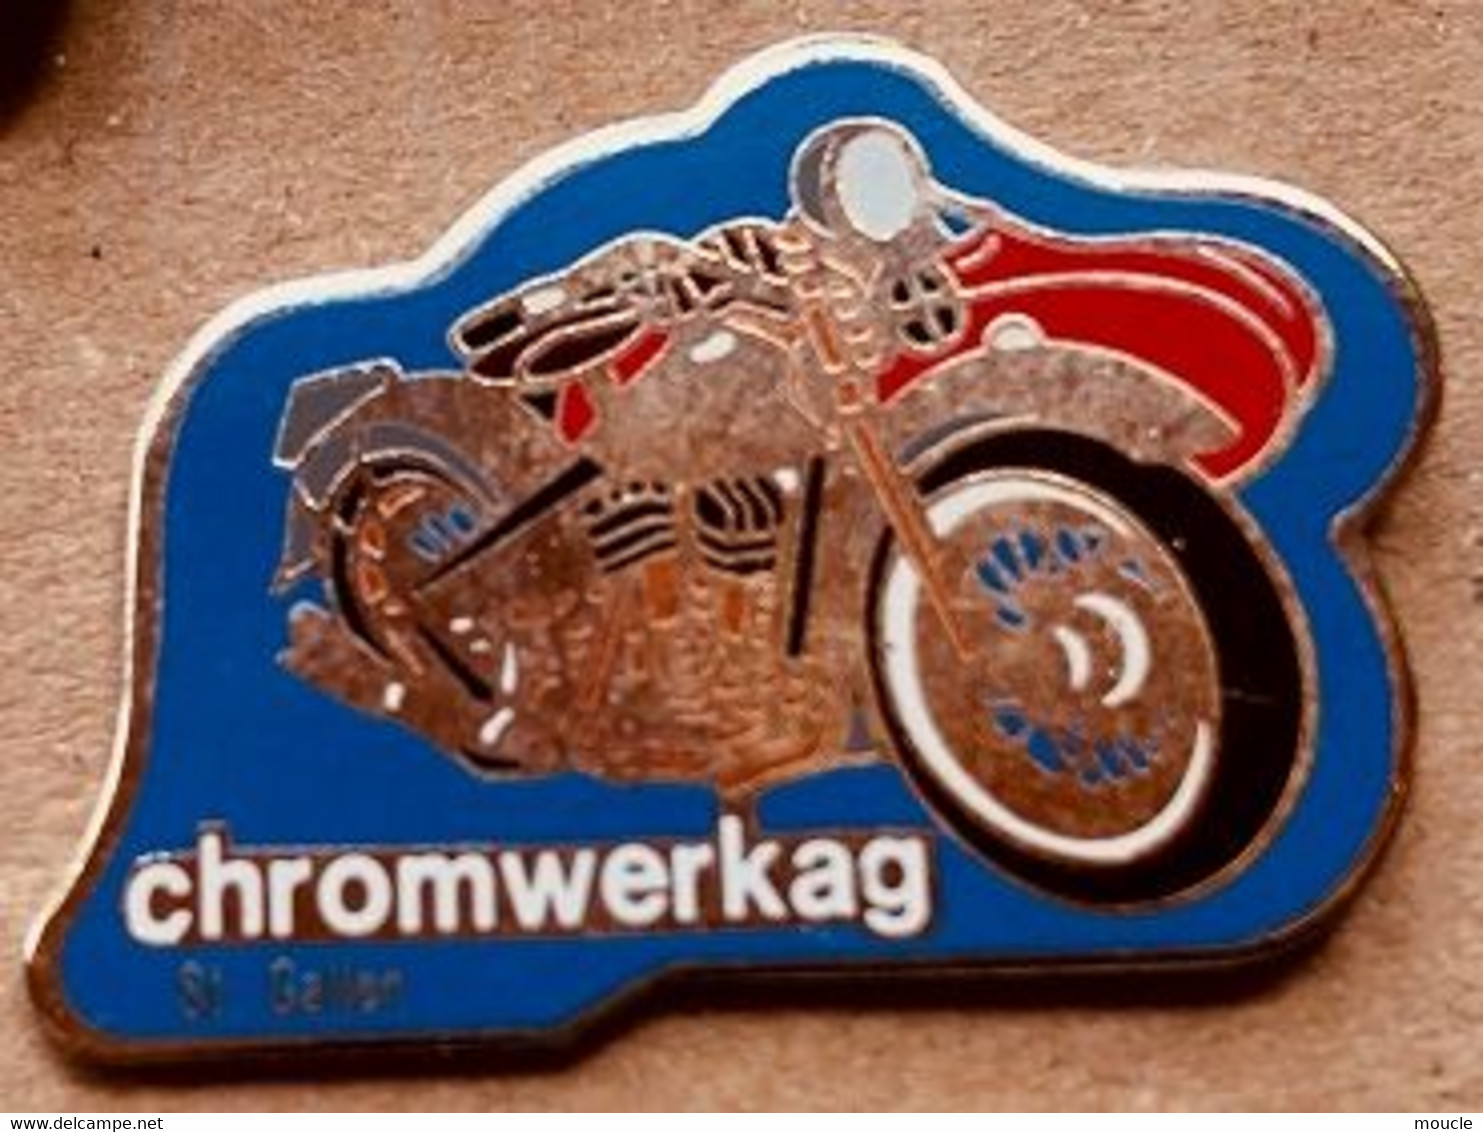 MOTO - SIDE CAR - CHROMWERKAG - SAINT GALLEN - SCHWEIZ - SAINT GALL - SUISSE - MOTORRAD    -                 (18) - Motorbikes